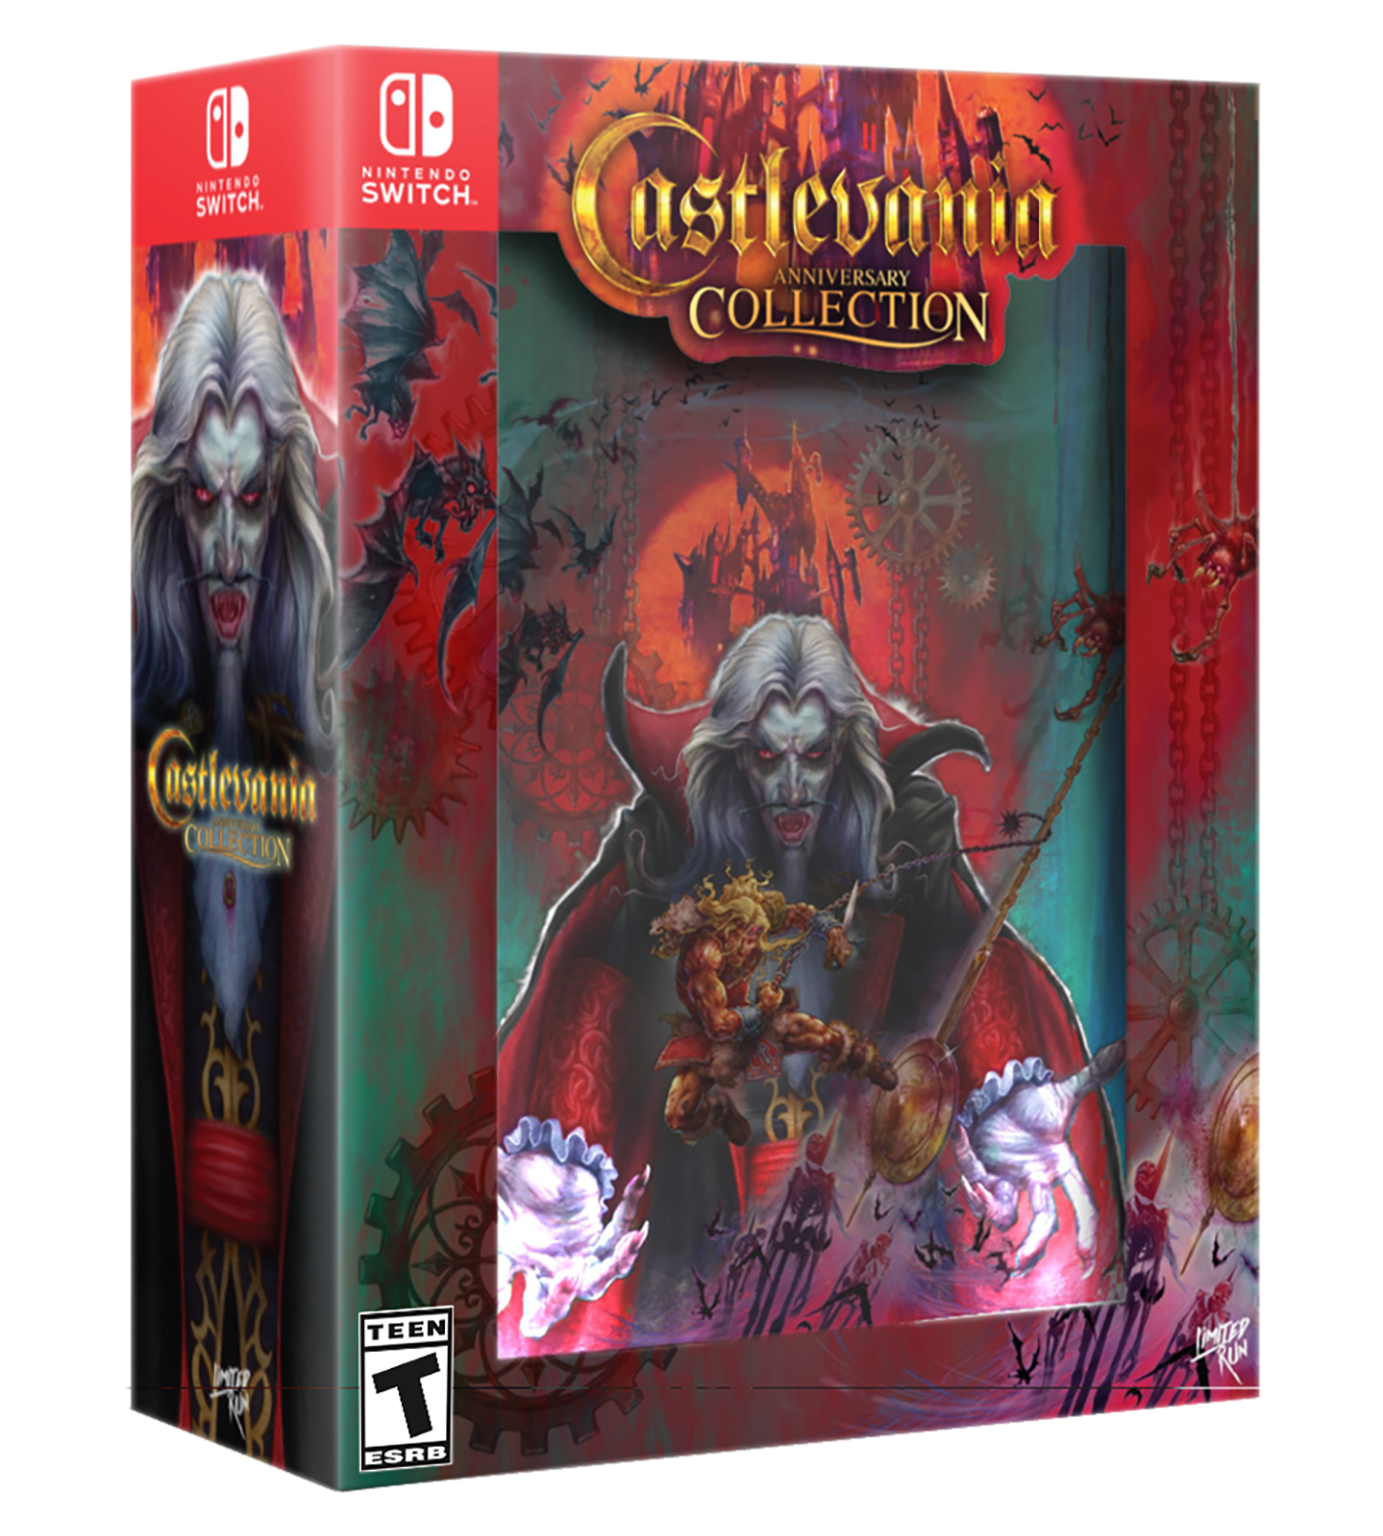 Castlevania nintendo. Castlevania collection Switch. Castlevania Anniversary Nintendo Switch. Castlevania Advance collection Switch.